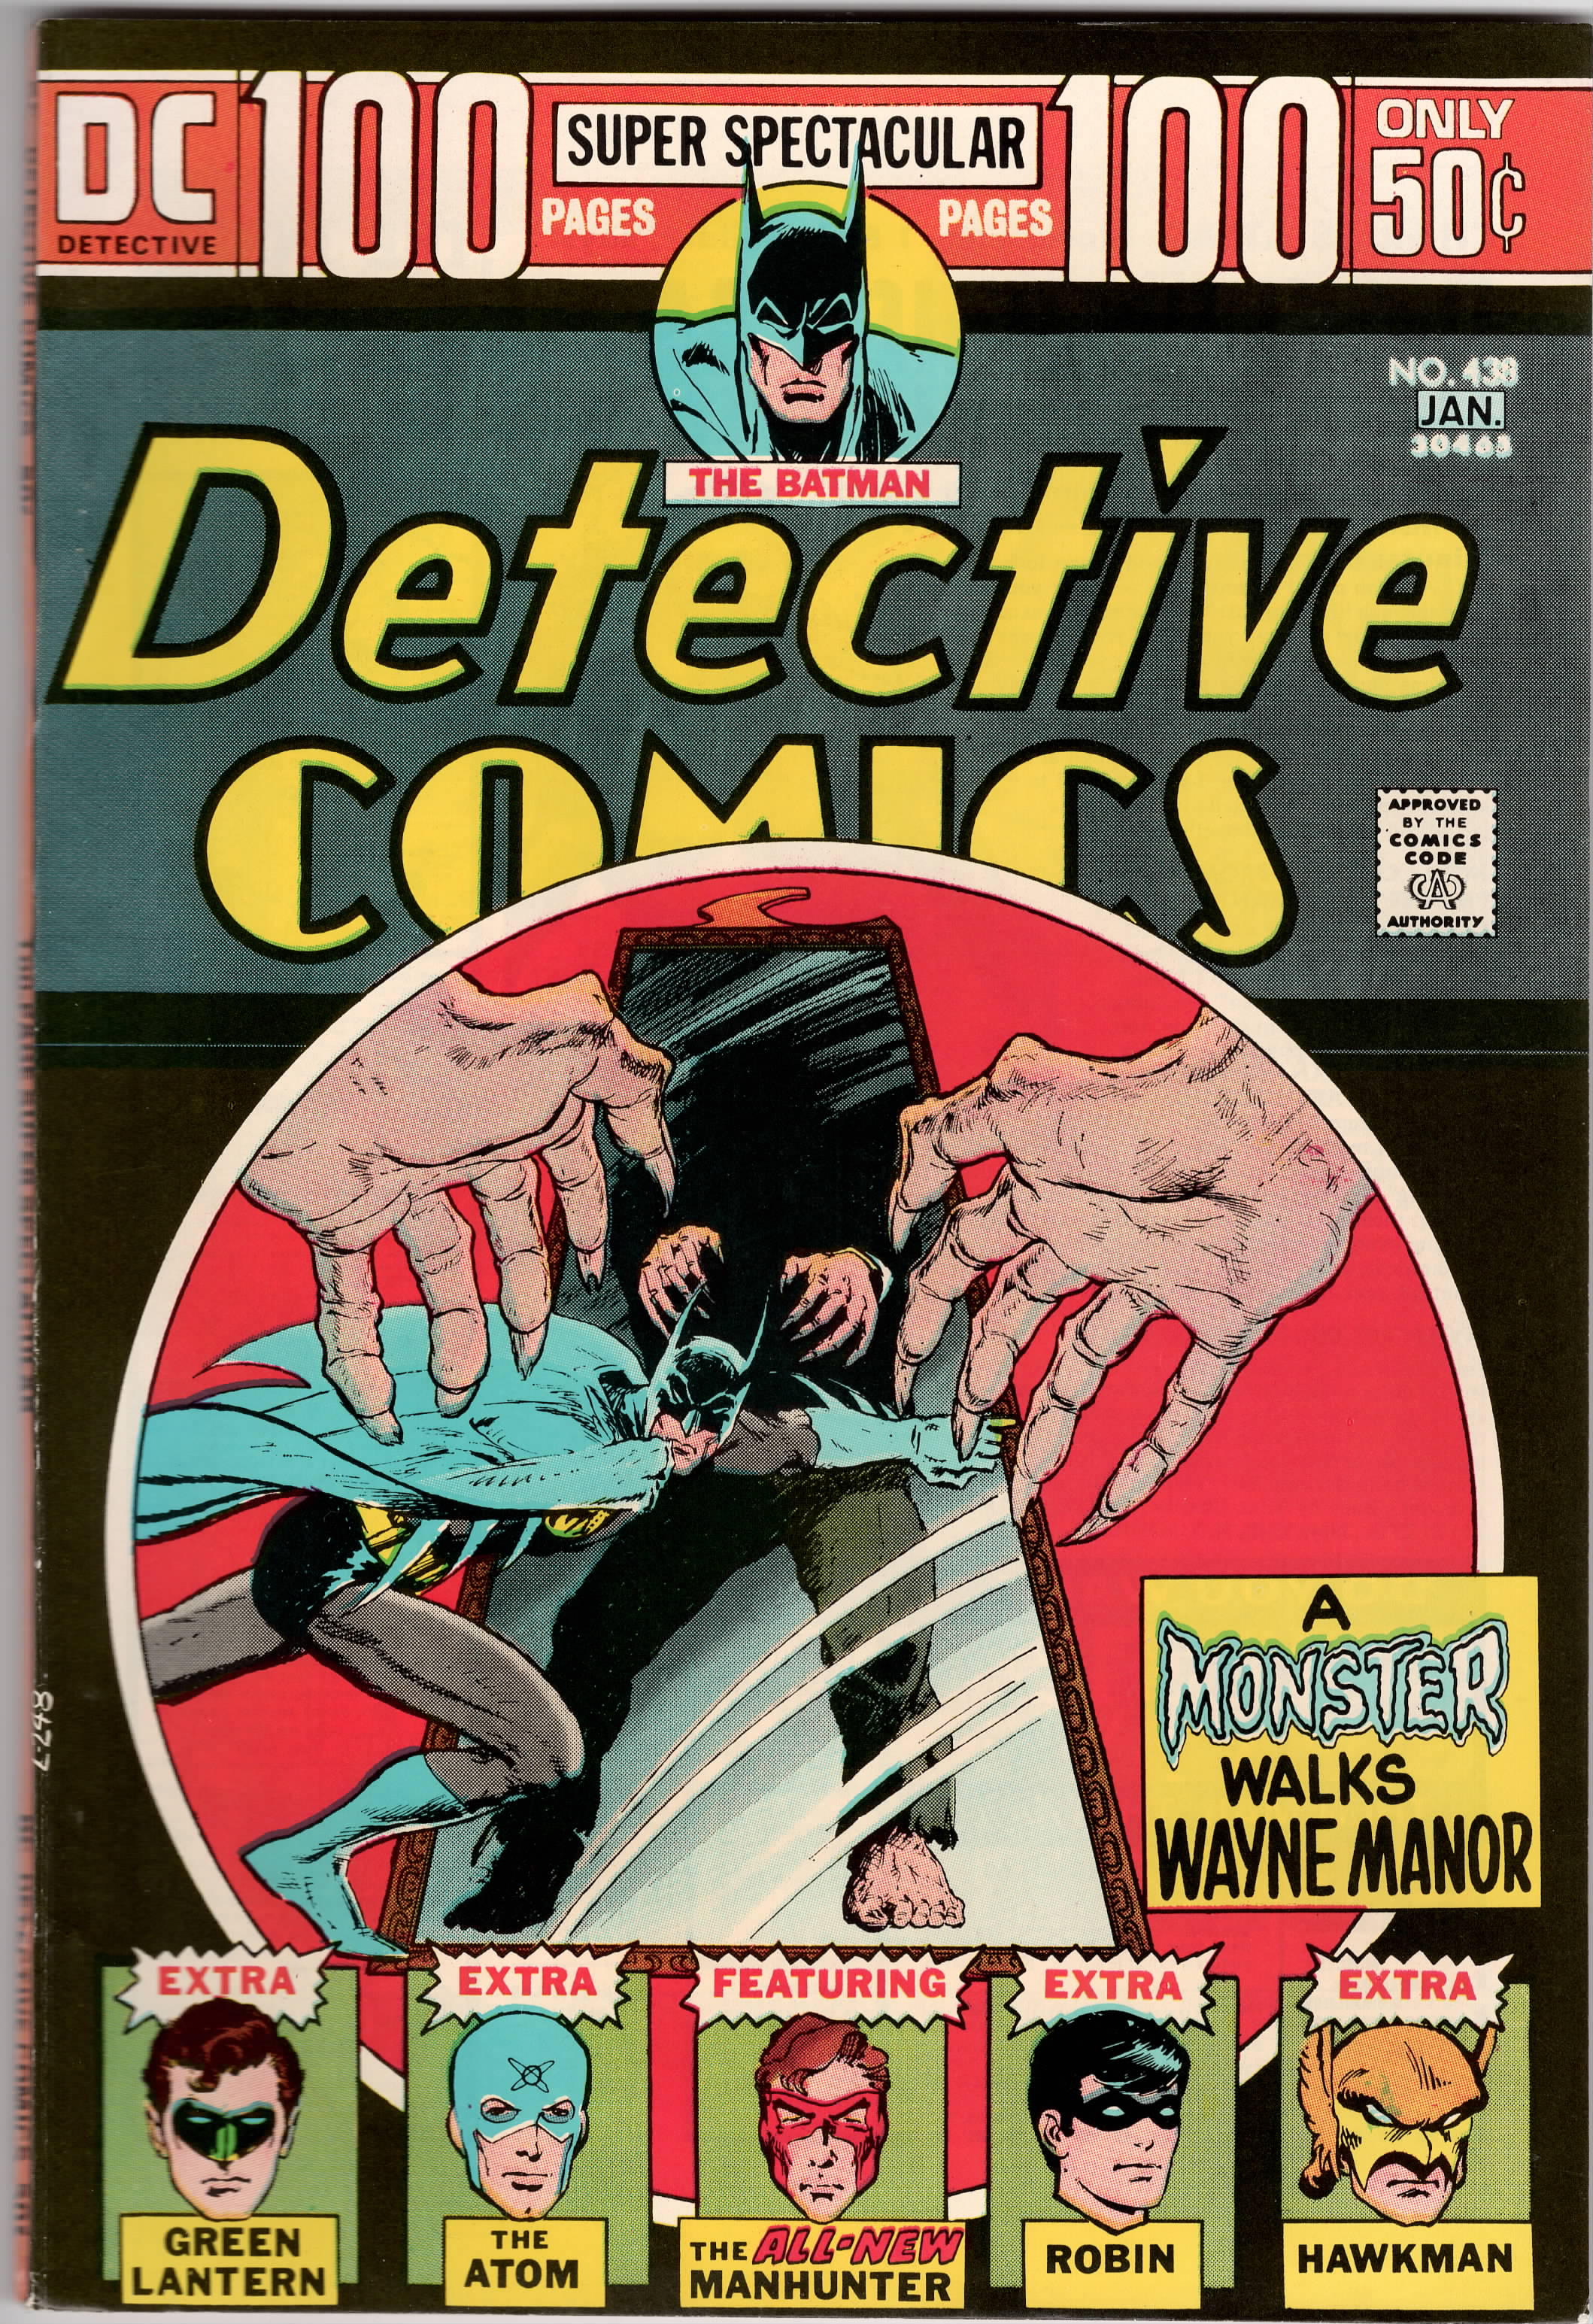 Detective Comics #0438